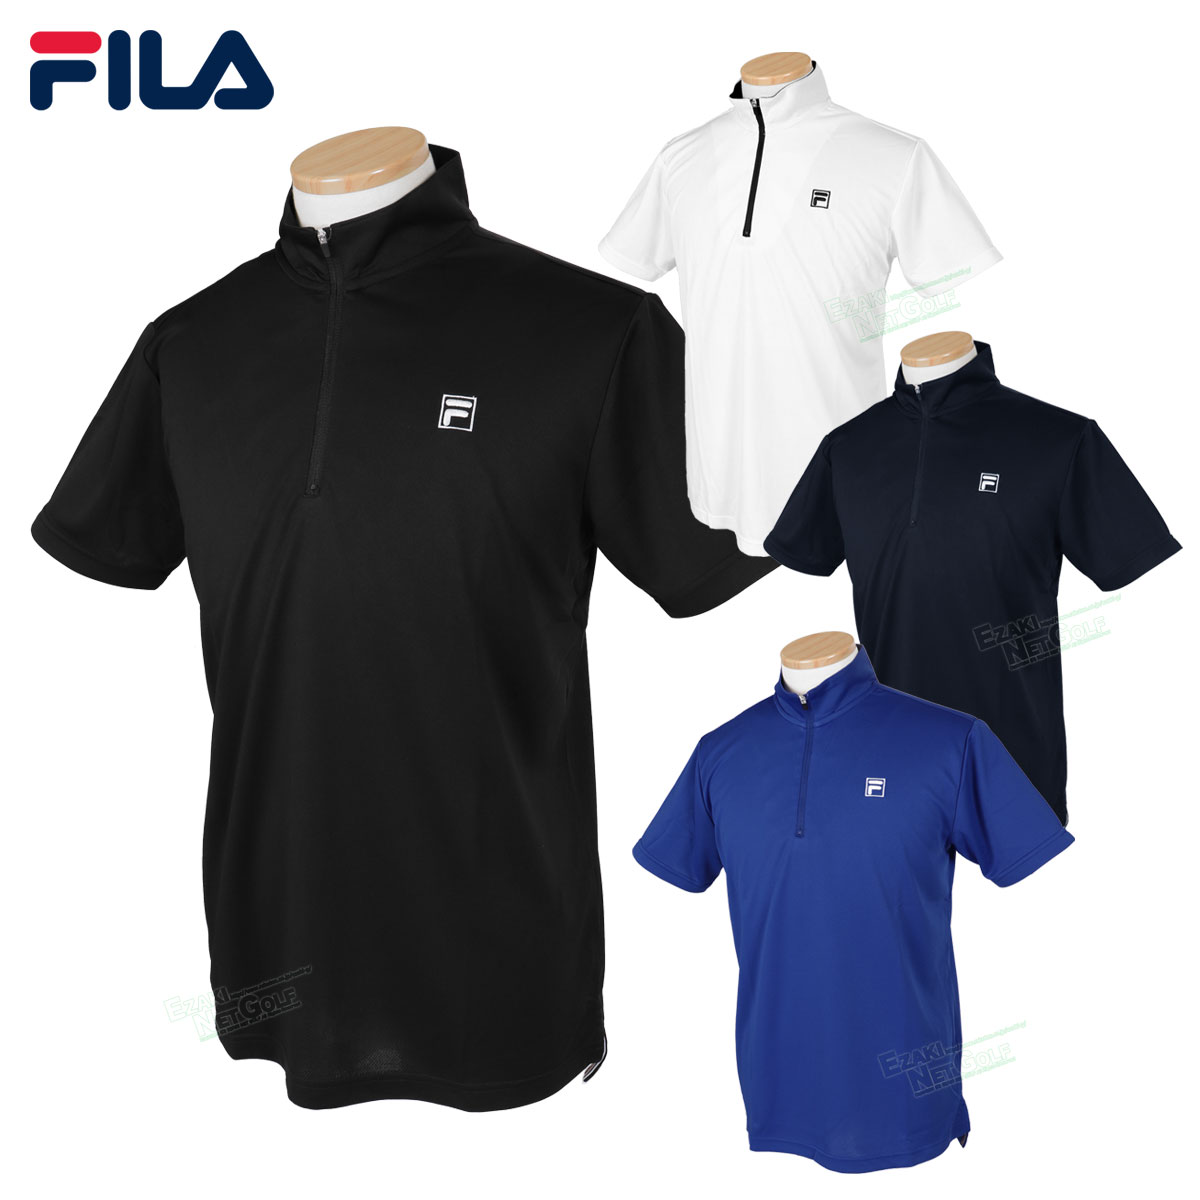 フィラ フィラゴルフ FILA GOLF ゴルフウエア メンズ 半袖シャツ 「 742686 」 吸汗速乾 UVカット 春夏ウエア 【あす楽対応】